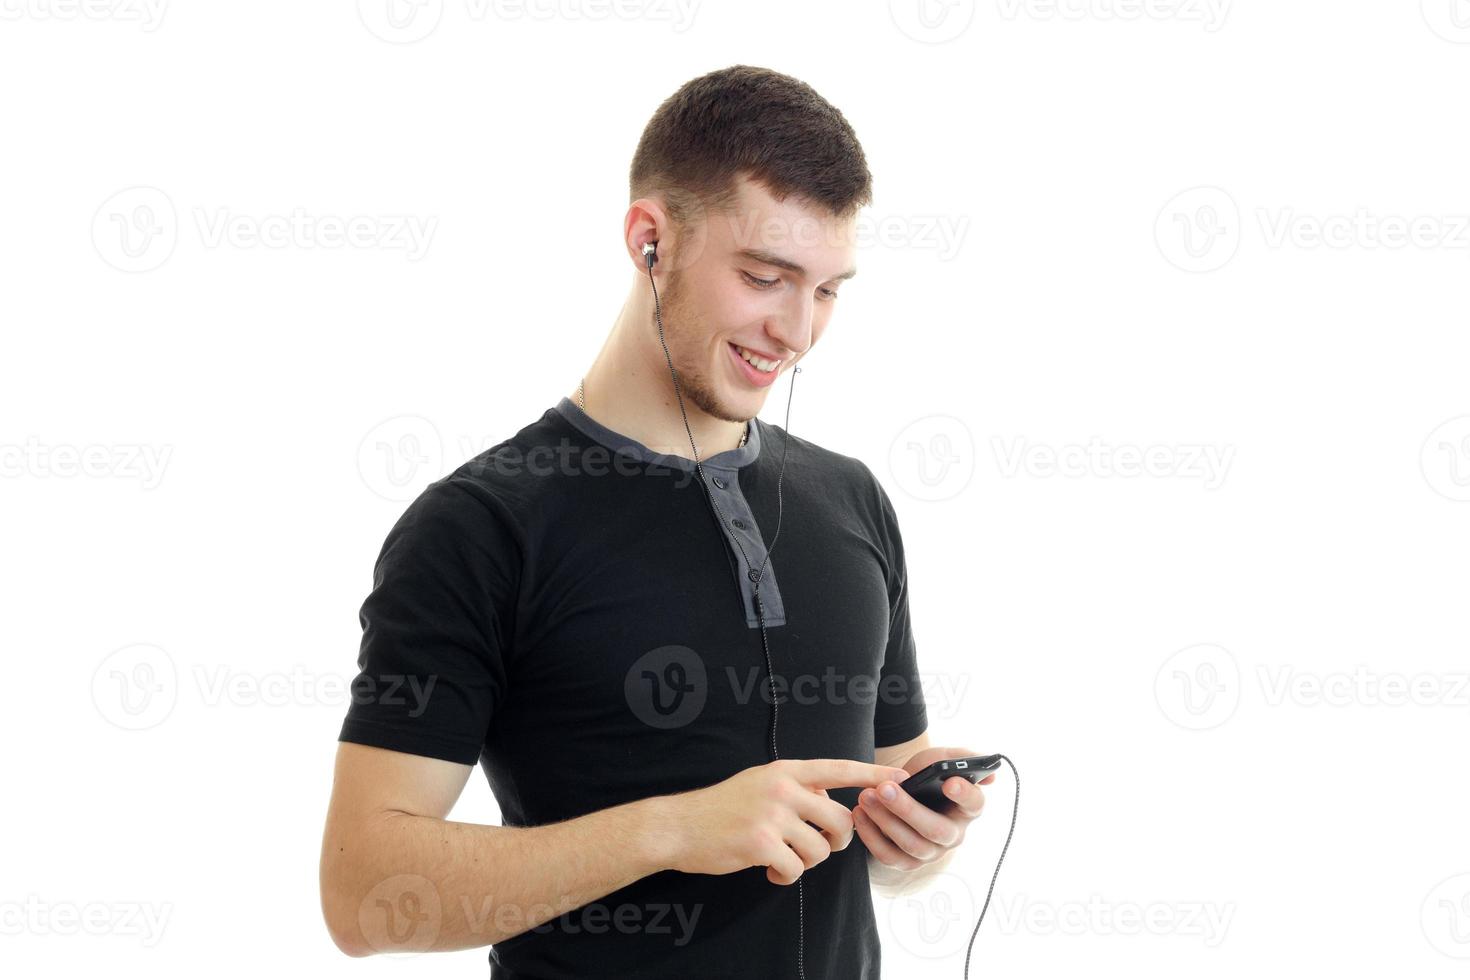 chico con la camisa negra sonriendo y mirando el teléfono en las manos foto